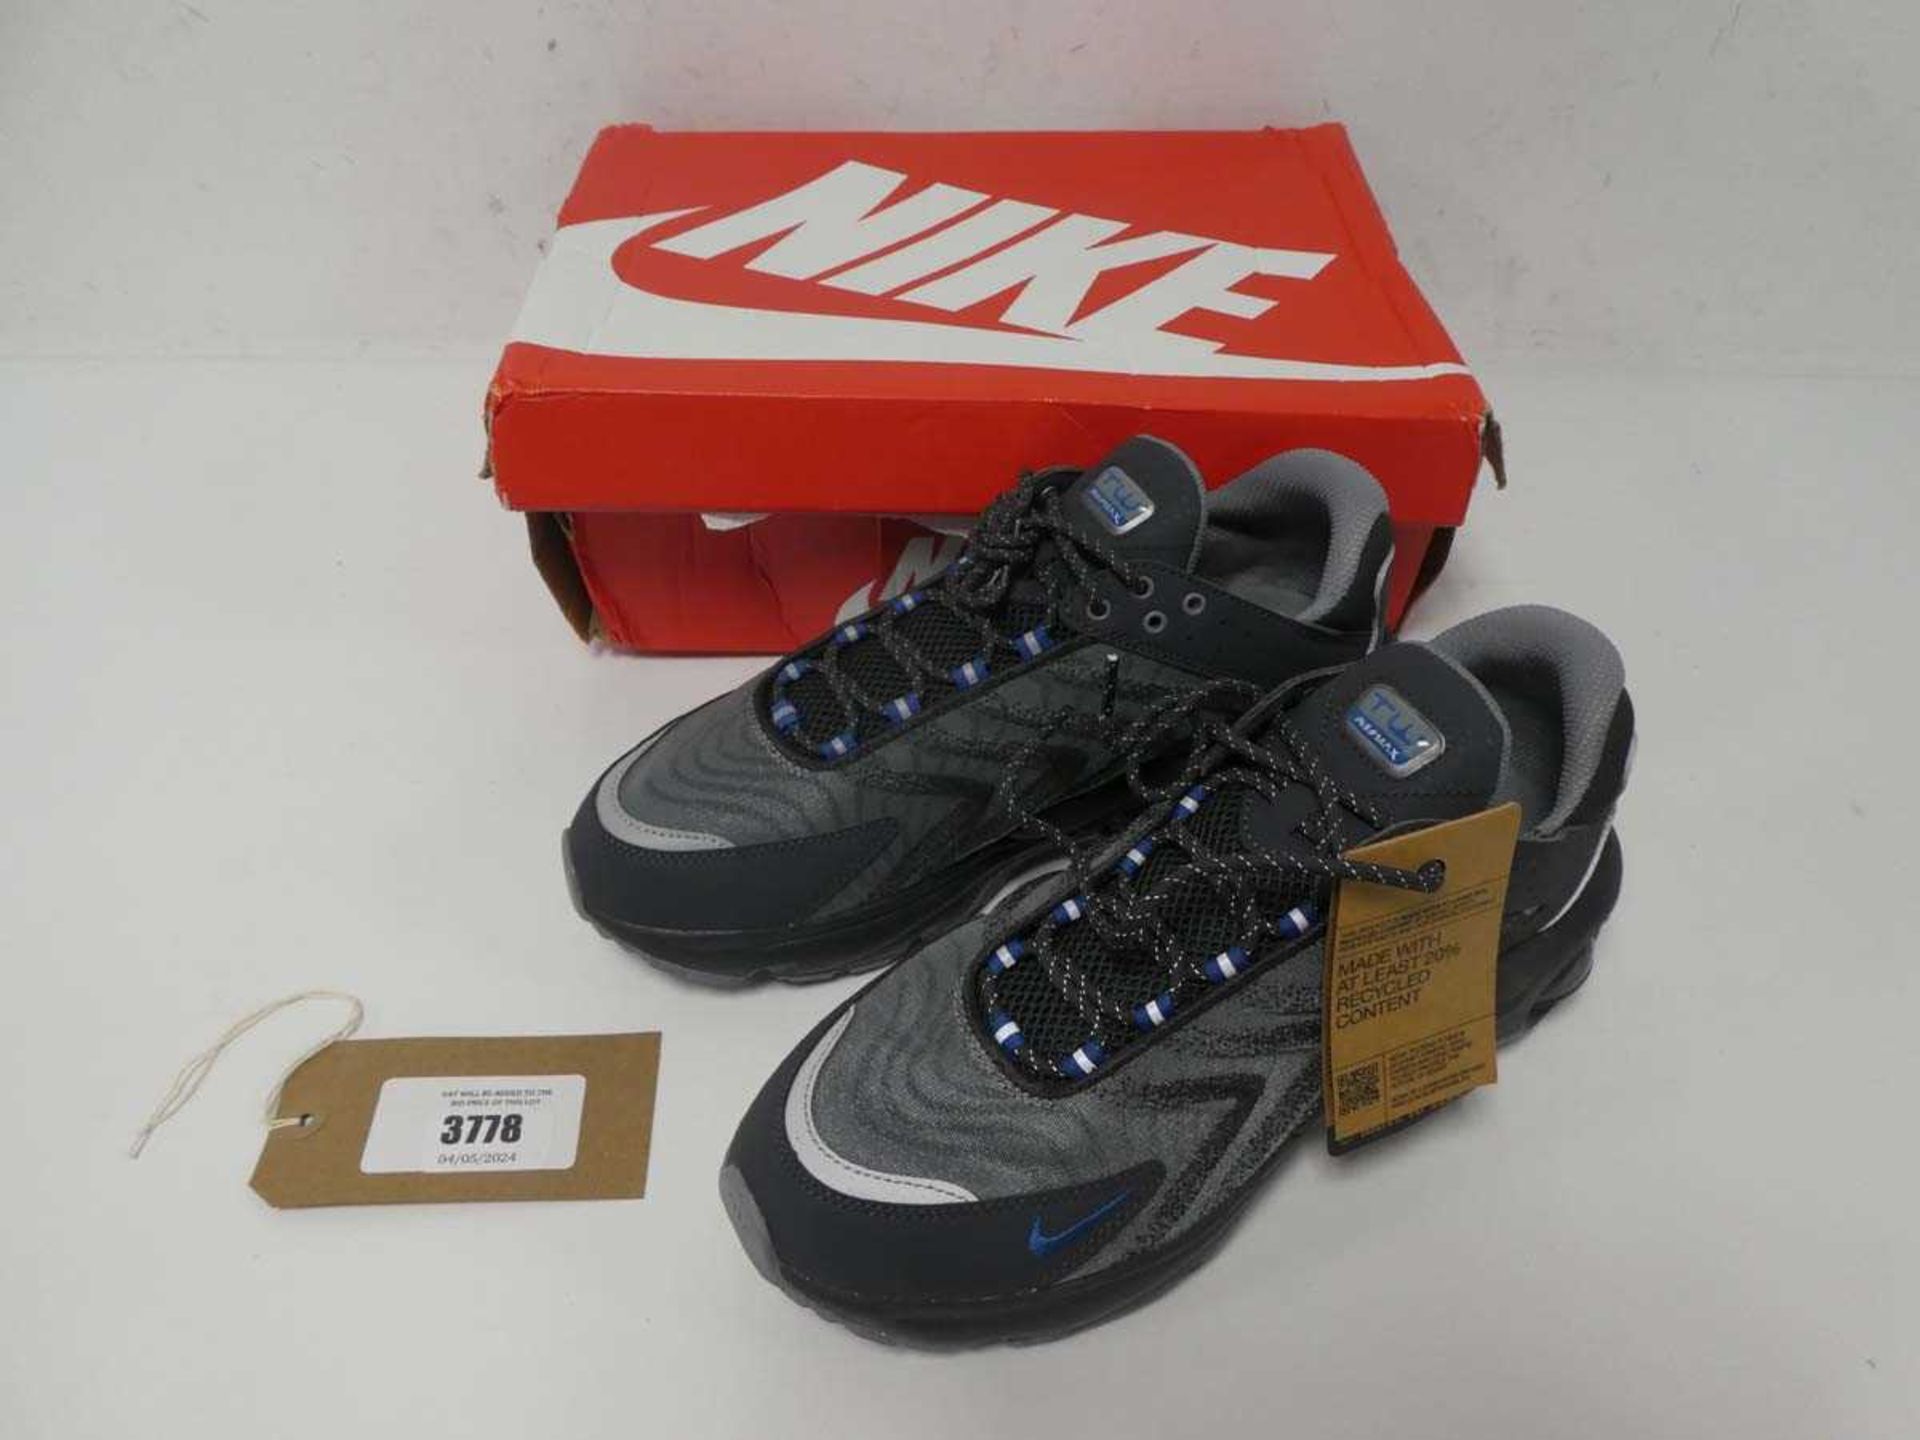 +VAT 1 x men's Nike Air Max trainers, UK 10